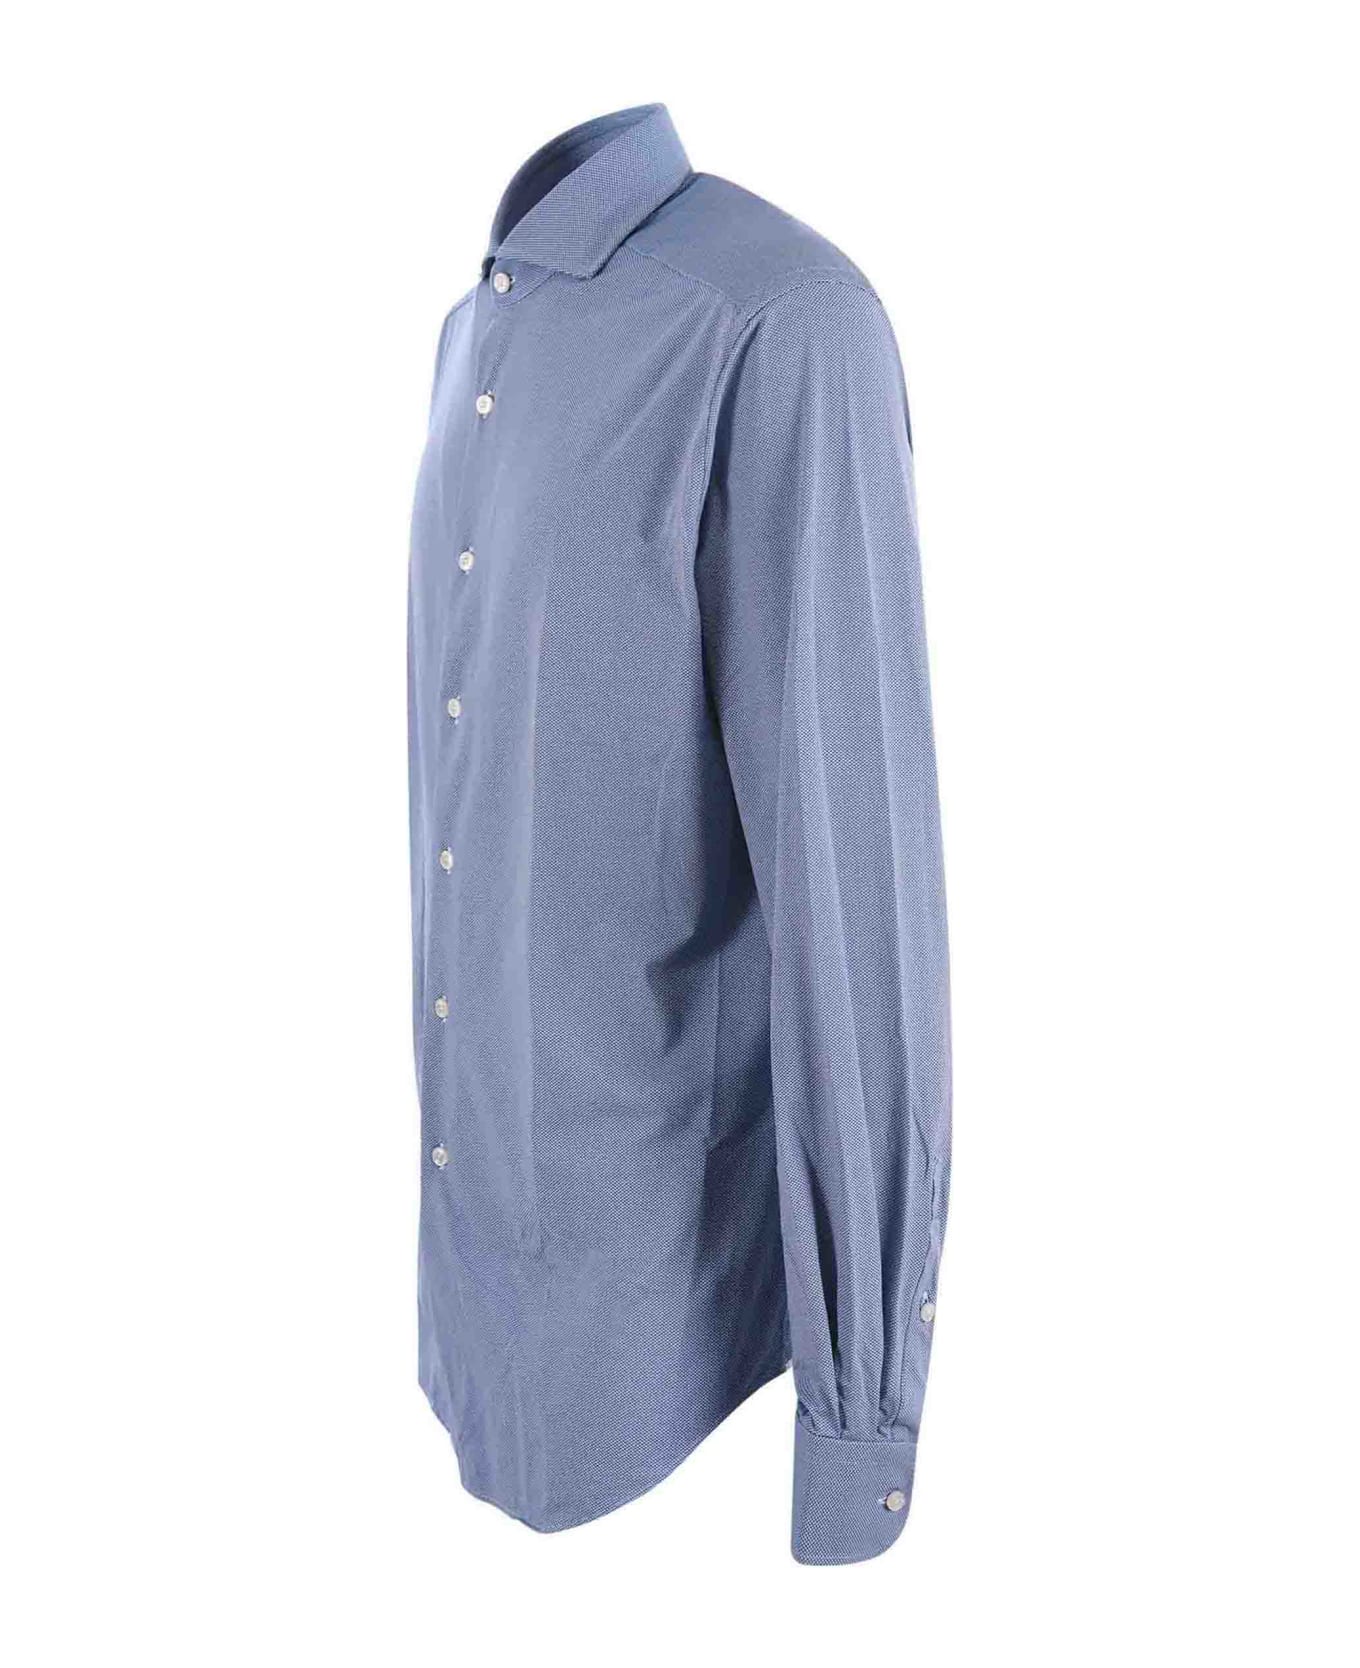 Xacus Shirt - Blu シャツ